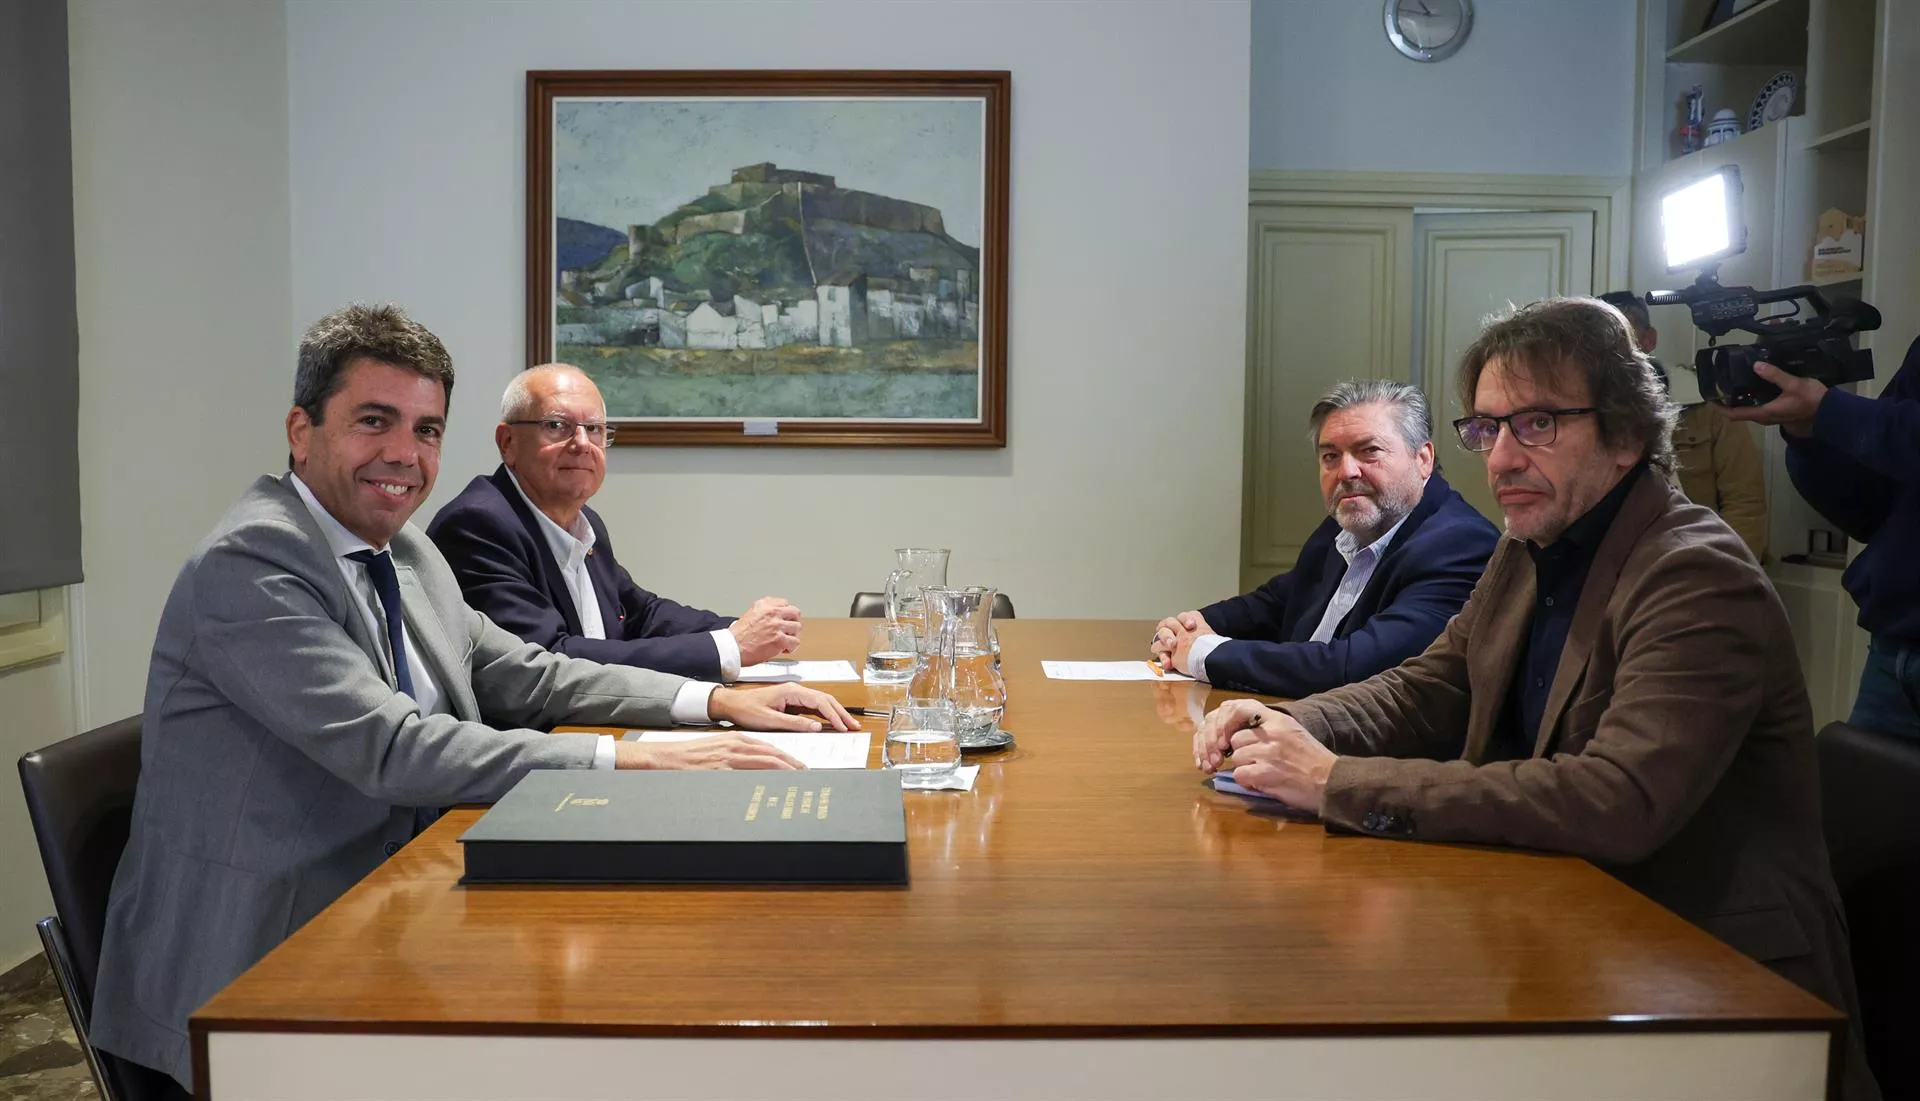 El presidente de la Generalitat, Carlos Mazón, se reúne con el alcalde de Dénia (Alicante), Vicent Grimalt, y el vicealcalde, Rafa Carrió.